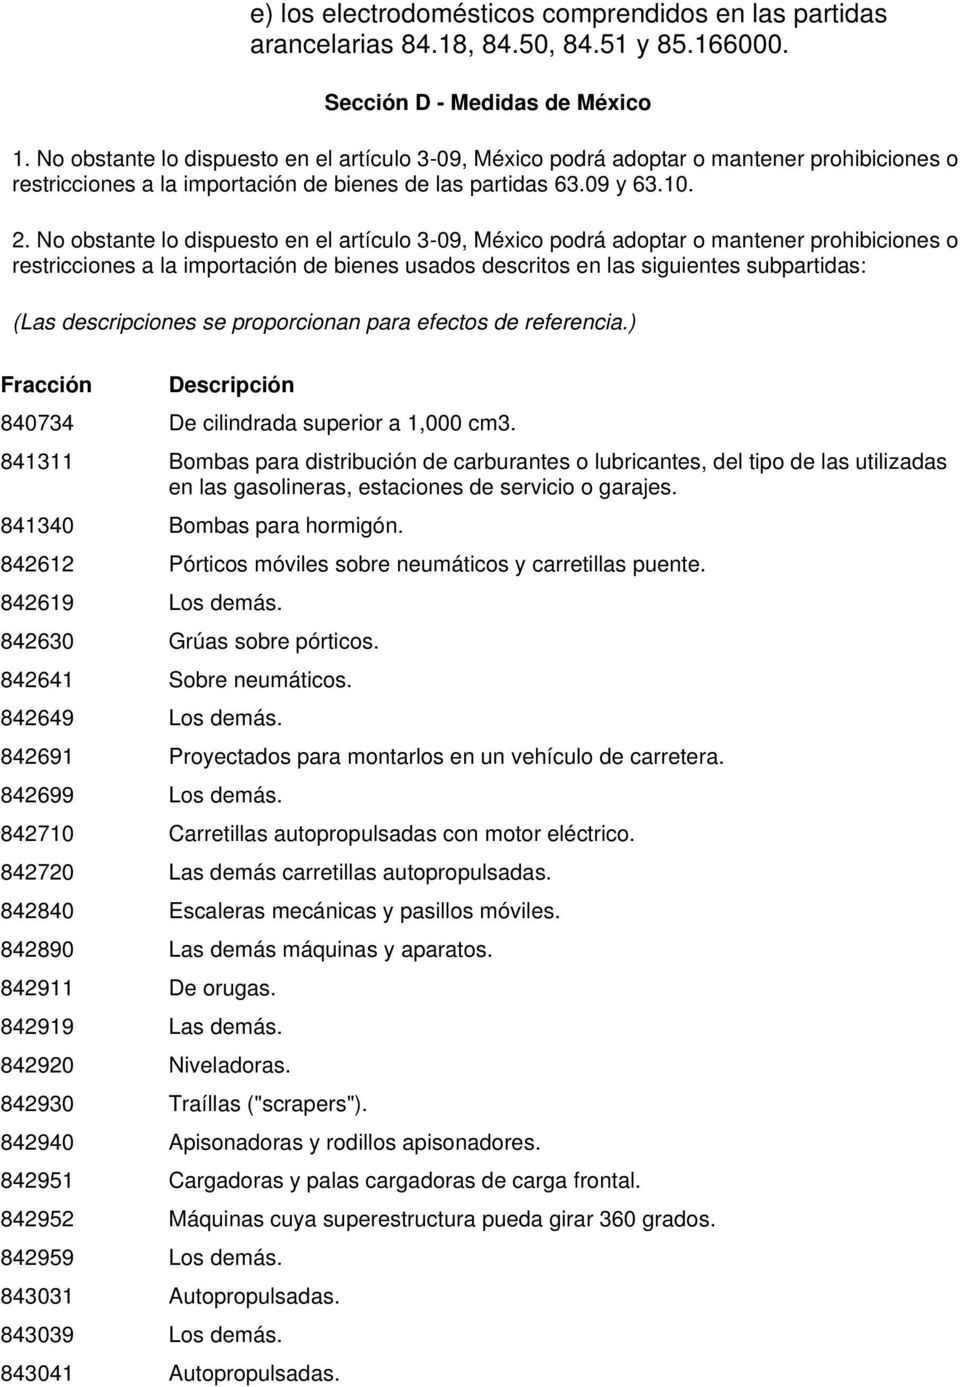 No obstante lo dispuesto en el artículo 3-09, México podrá adoptar o mantener prohibiciones o restricciones a la importación de bienes usados descritos en las siguientes subpartidas: (Las